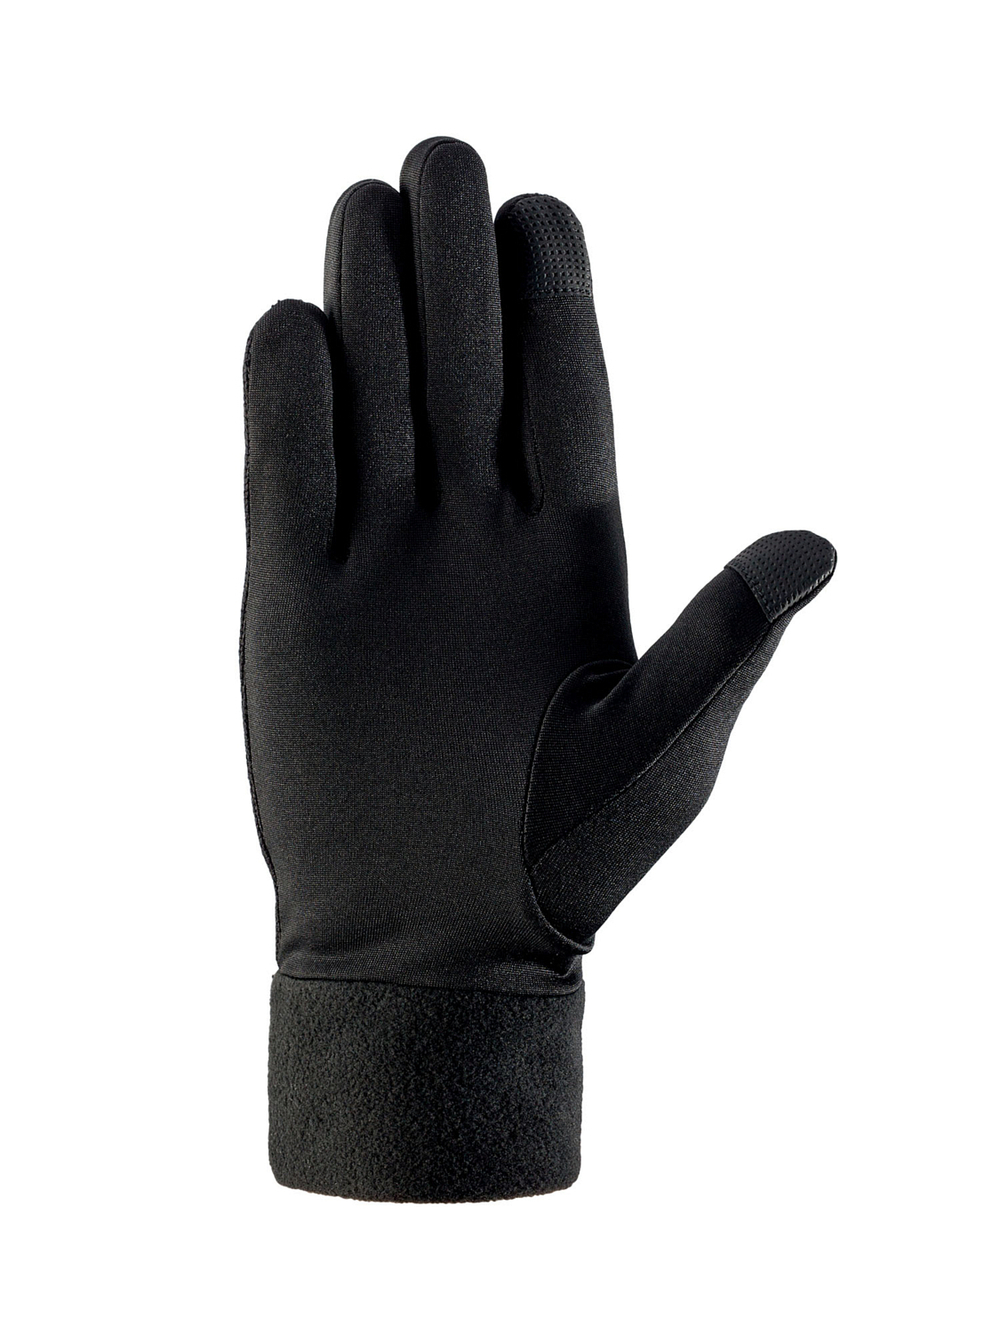 Перчатки VIKING Dramen Black (inch (дюйм):7)